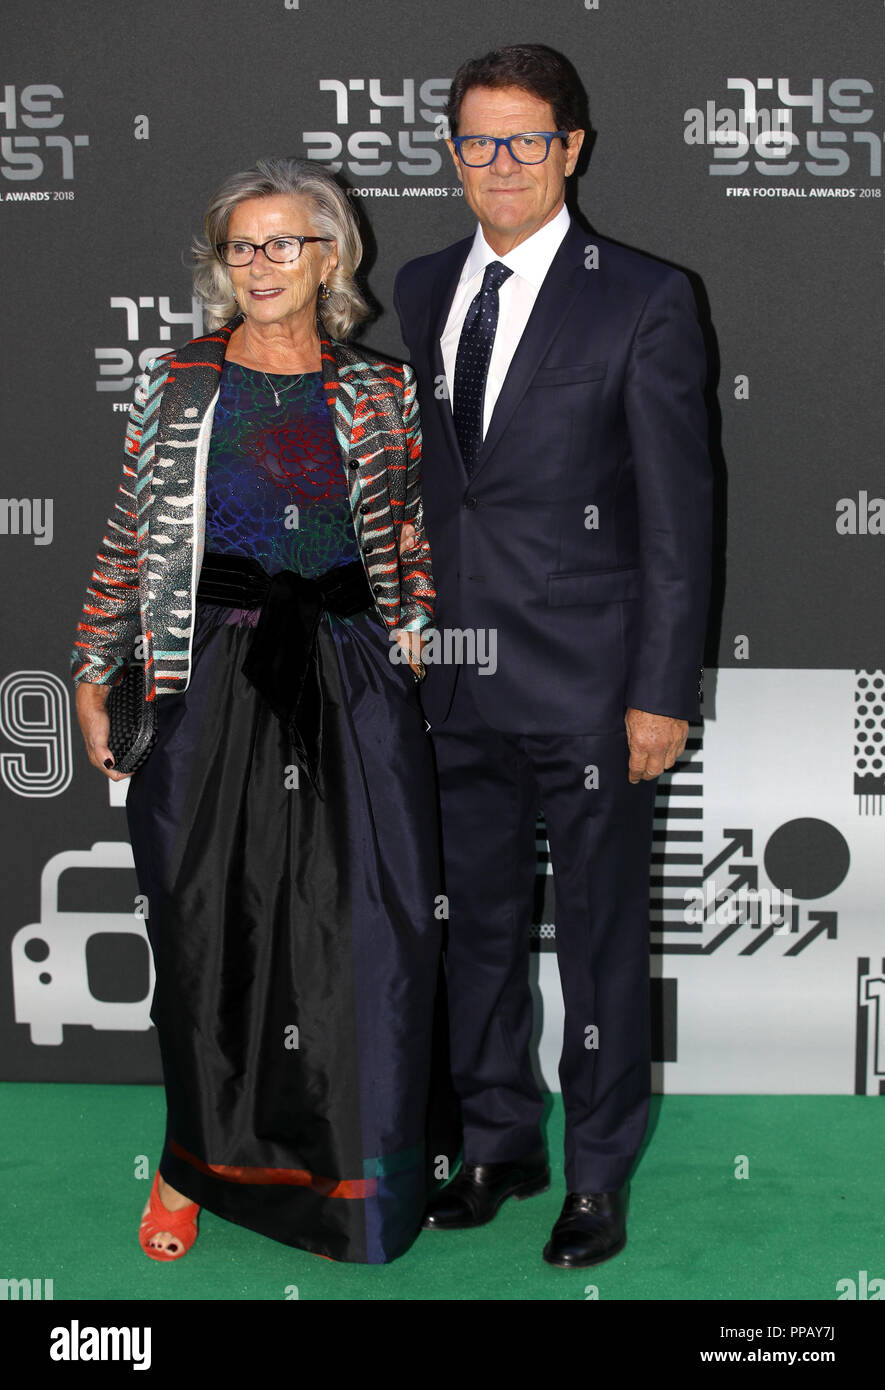 Fabio Capello und seine Frau Laura Ghisi kommen für die besten FIFA-Fußballpreise 2018 in die Royal Festival Hall, London. Stockfoto